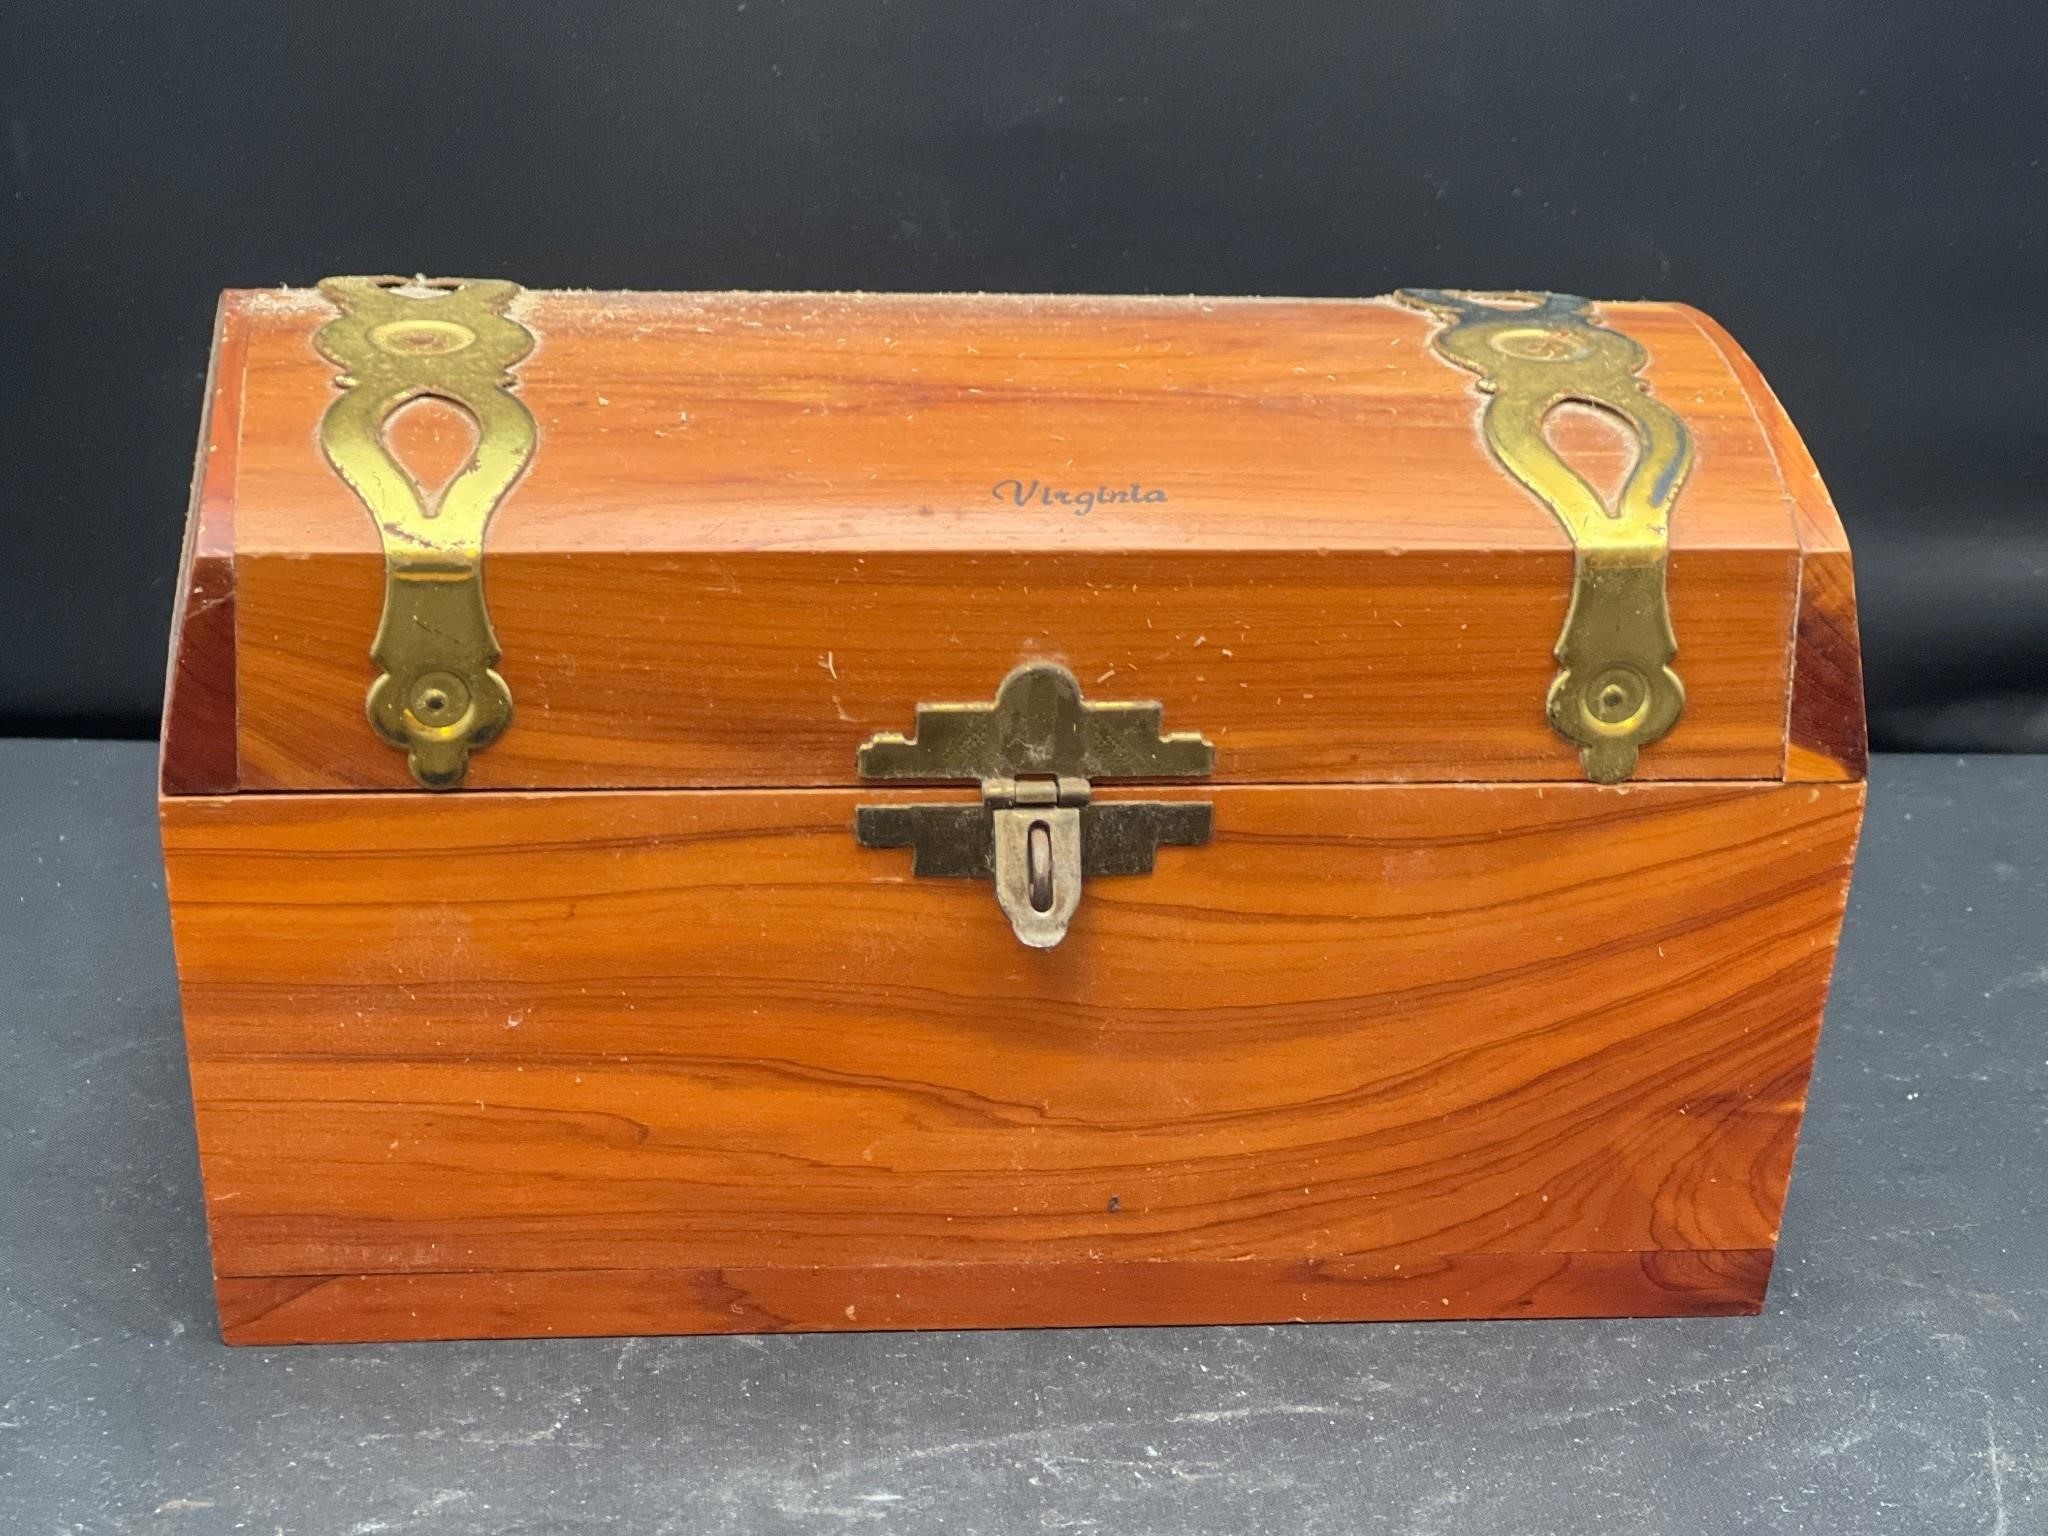 Vintage Virginia wooden box